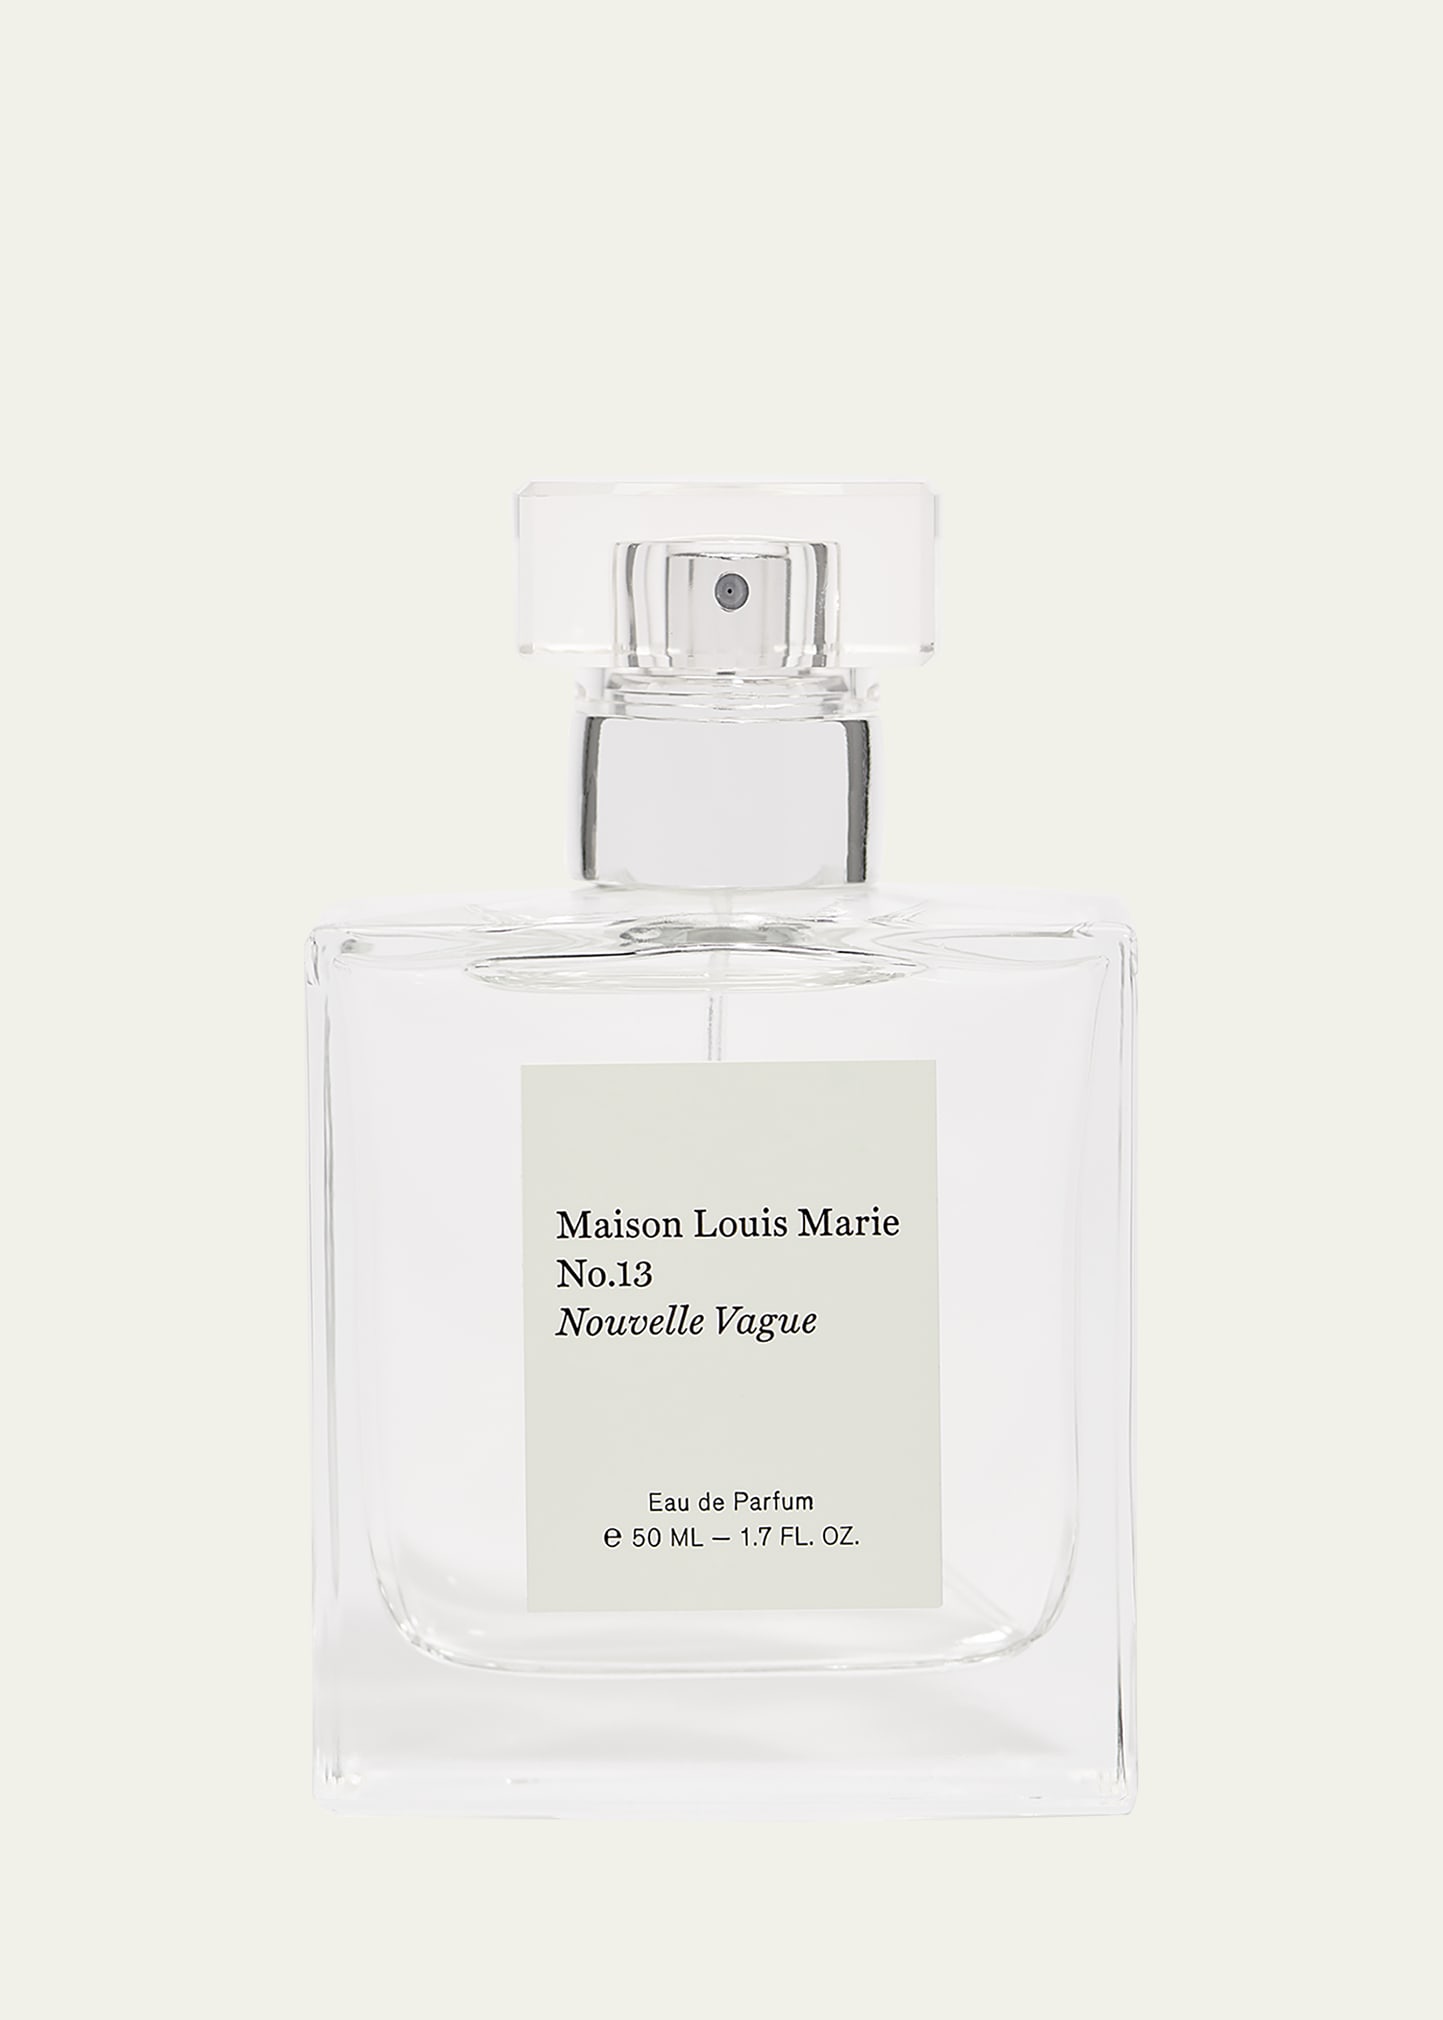 Maison Louis Marie No.13 Nouvelle Vague Eau De Parfum, 1.7 Oz.